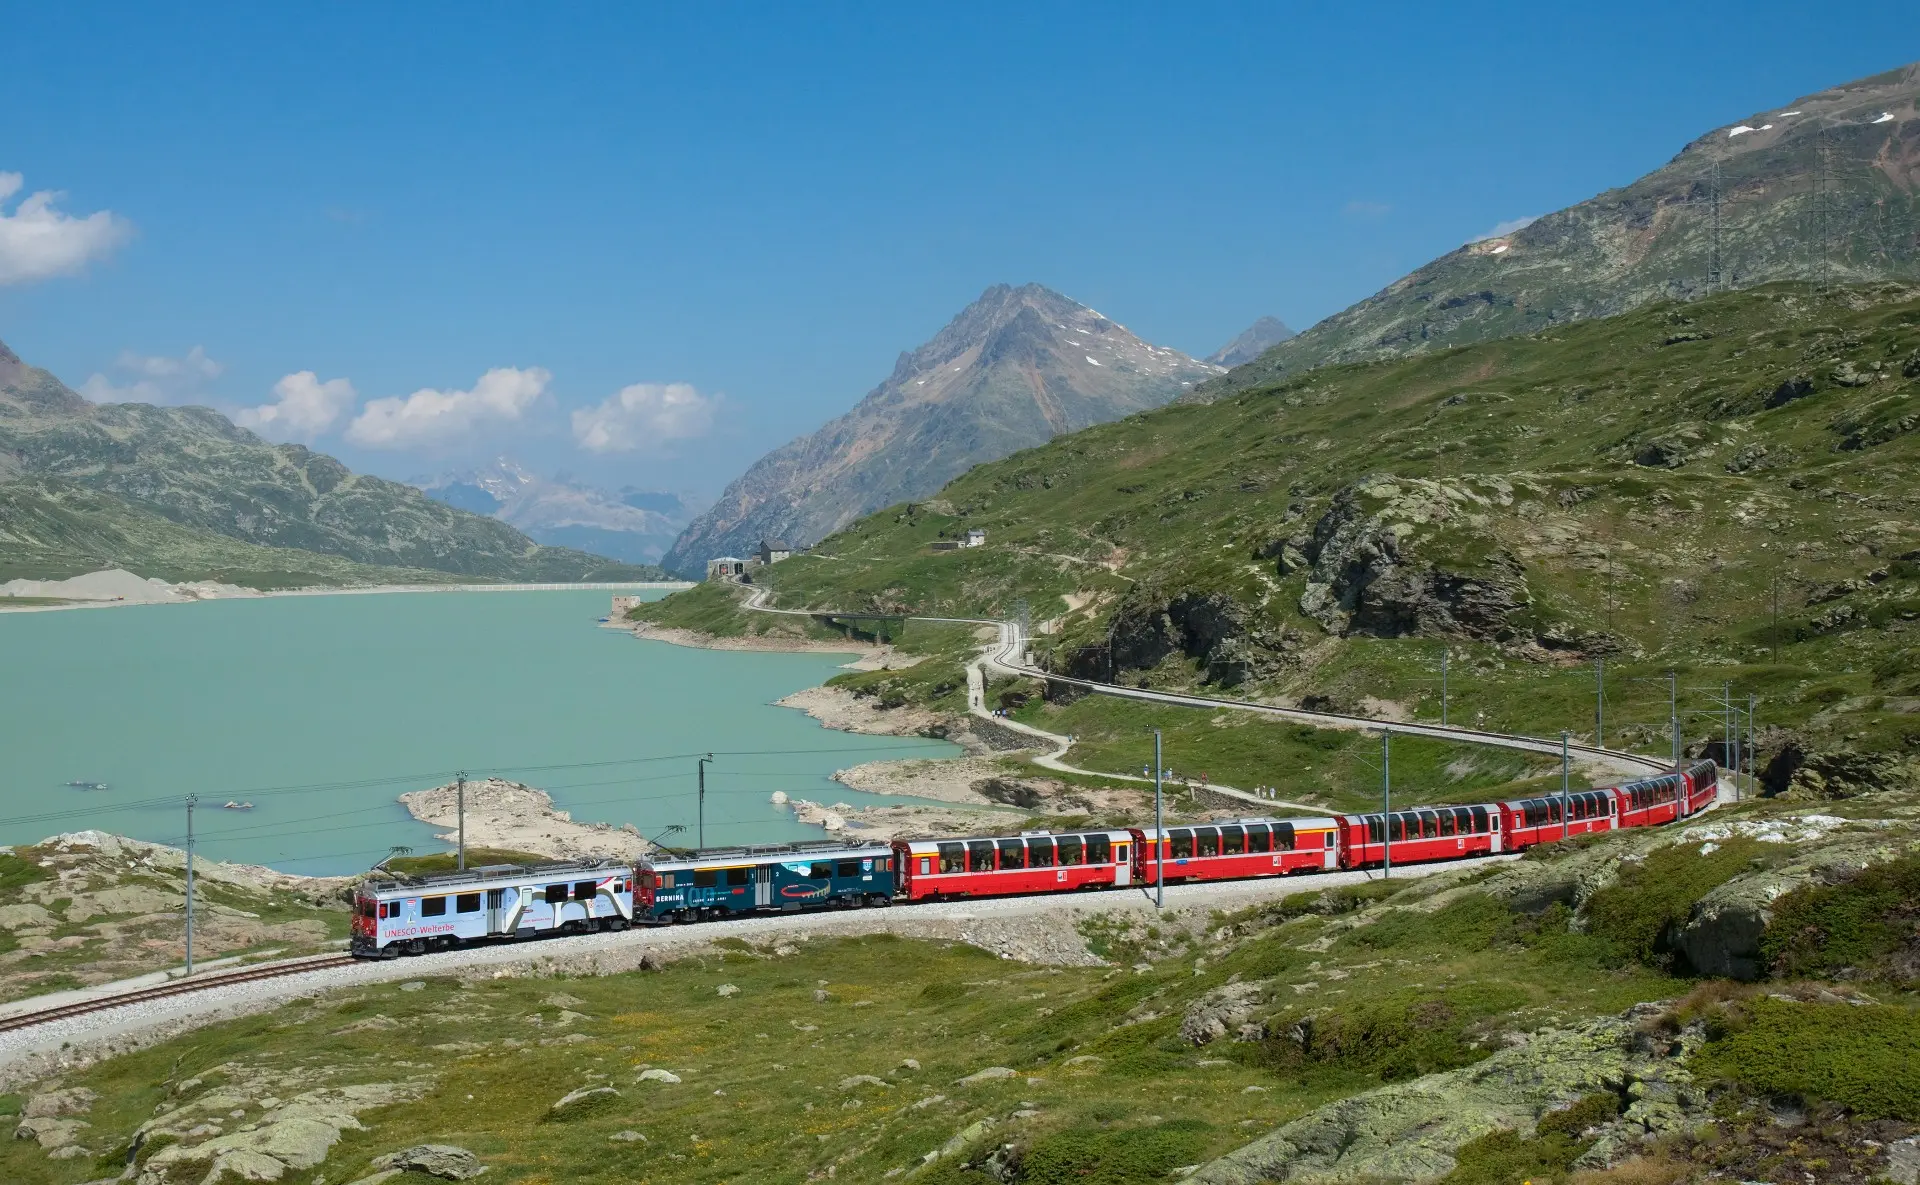 comprar billetes de tren en suiza - Cómo se paga el transporte público en Suiza